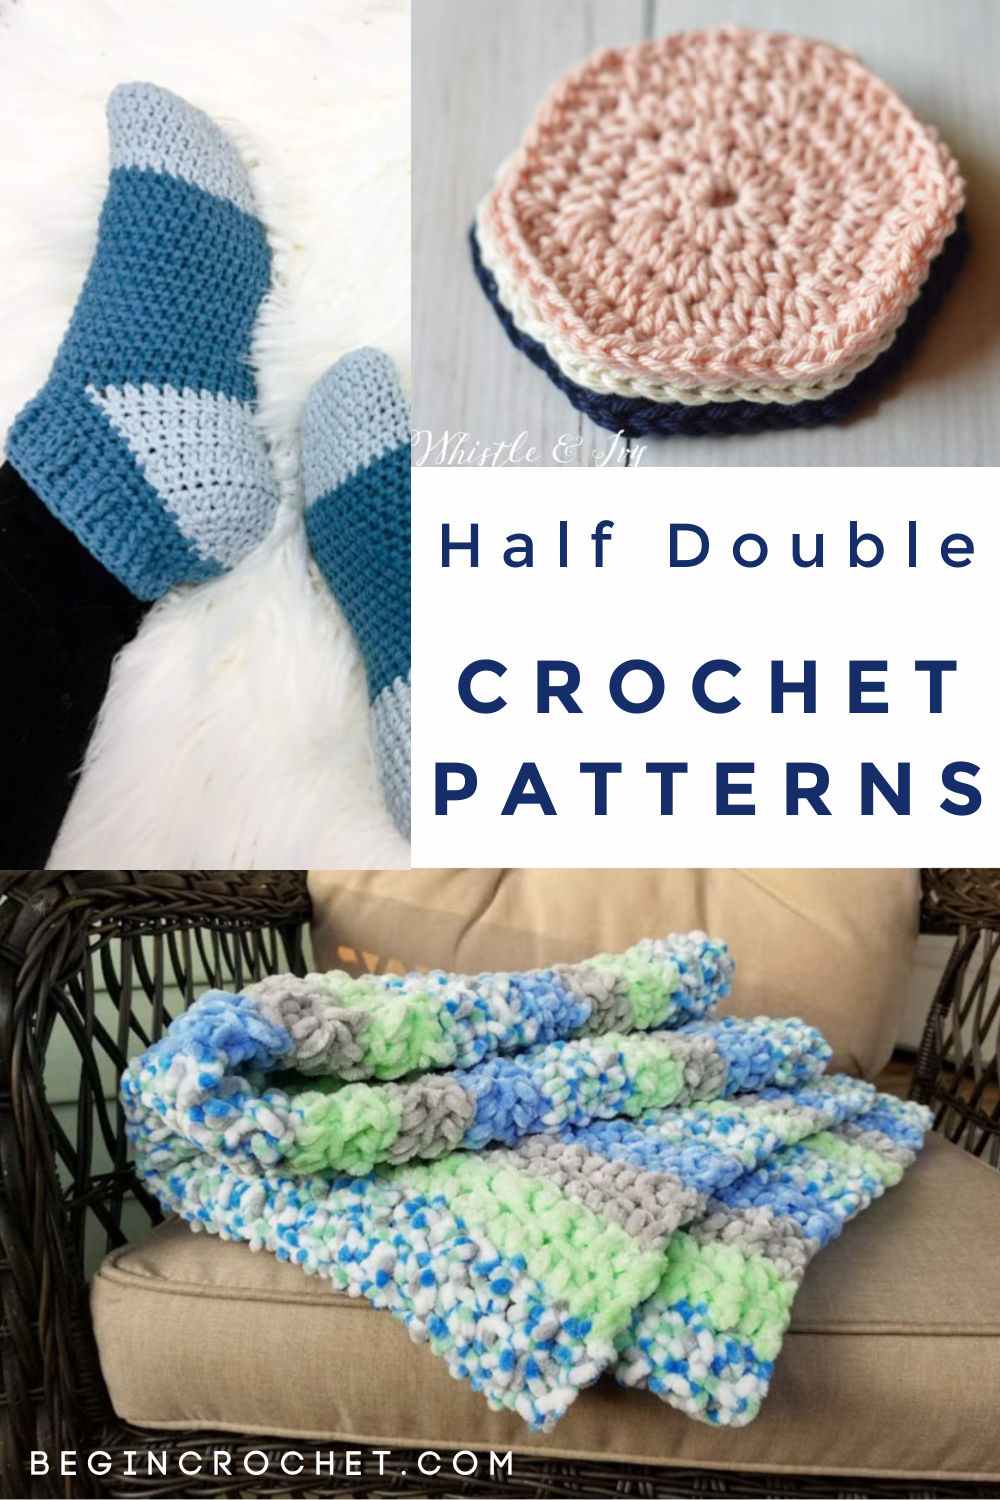 13 Half Double Crochet Patterns (All Free!) - Begin Crochet